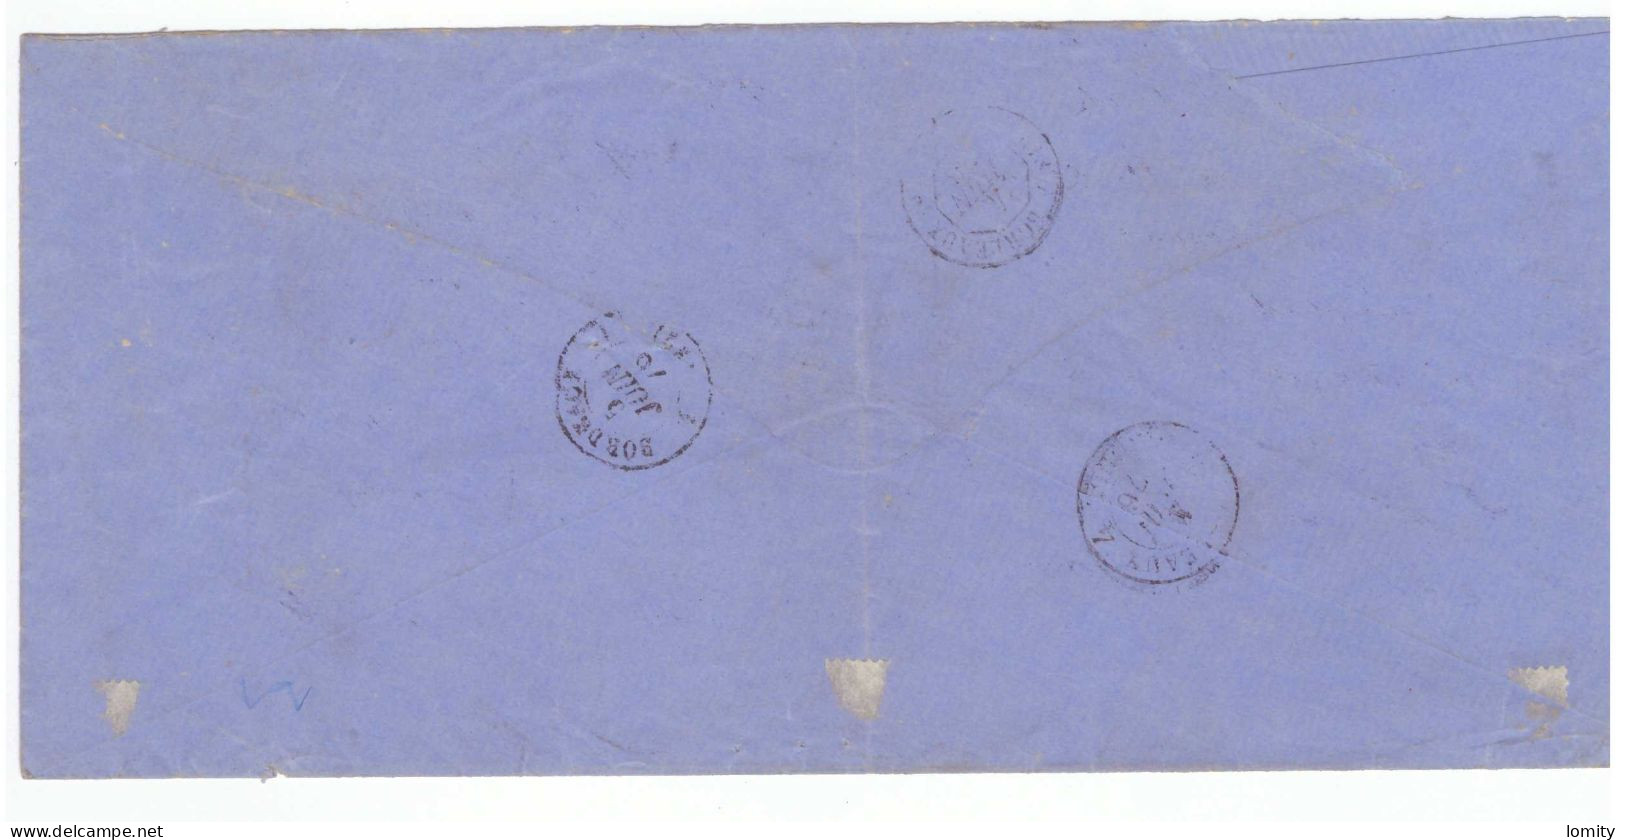 Lettre 1876 Cachet Triangulaire En Numéraire Faute De Timbres Coloniaux , Nouméa Nouvelle Calédonie - Cartas & Documentos